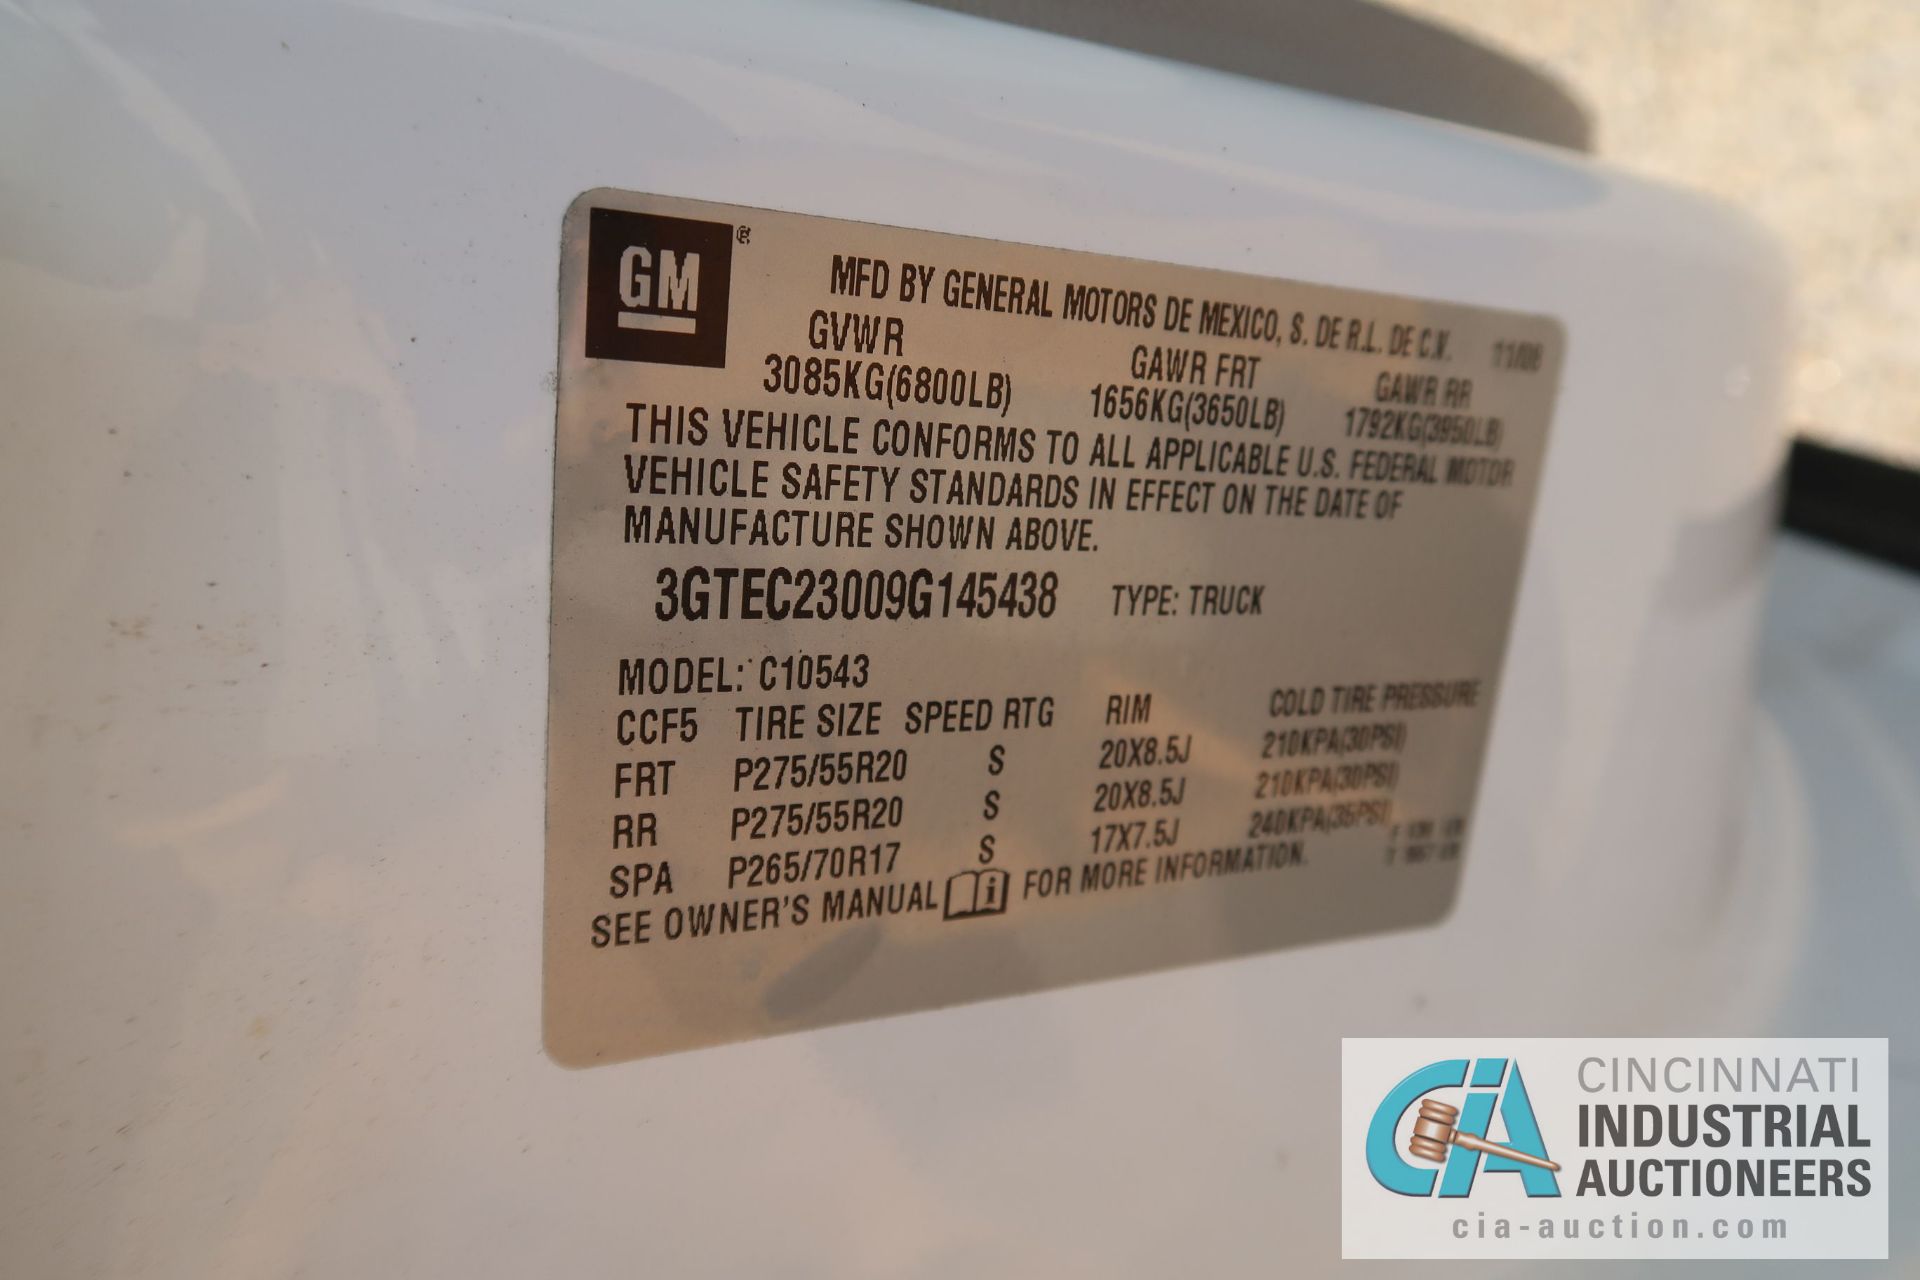 2009 GMC SIERRA QUAD CAB PICKUP TRUCK; VIN # 3GTEC23009G145438, VORTEC V-8 GASOLINE ENGINE, - Image 7 of 7